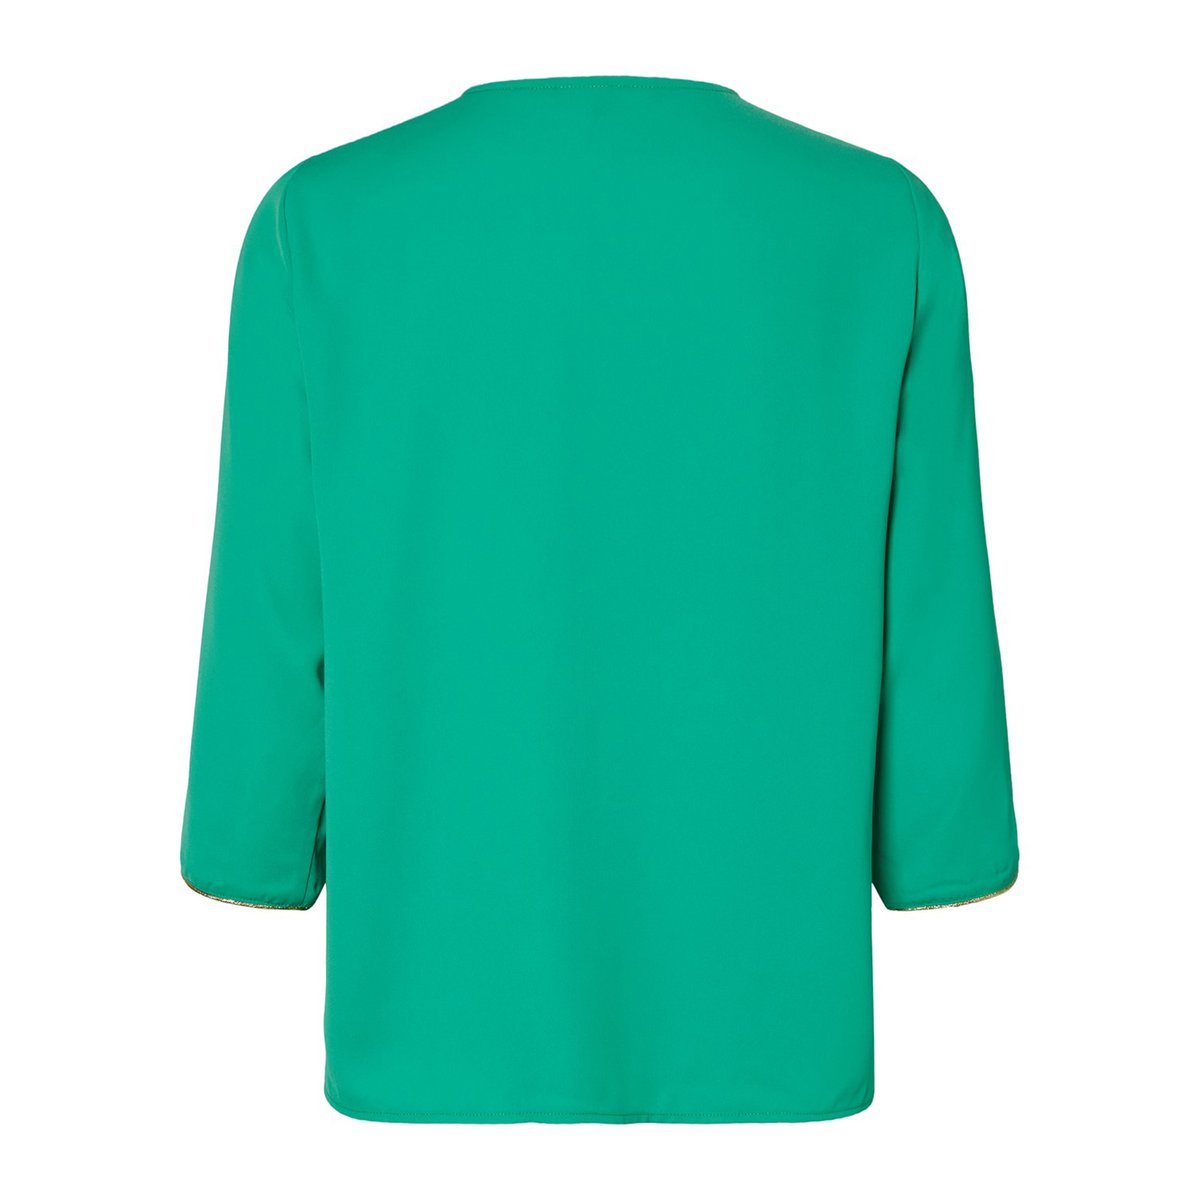 Блузка La Redoute Струящаяся с V-образным вырезом XS зеленый, размер XS - фото 2